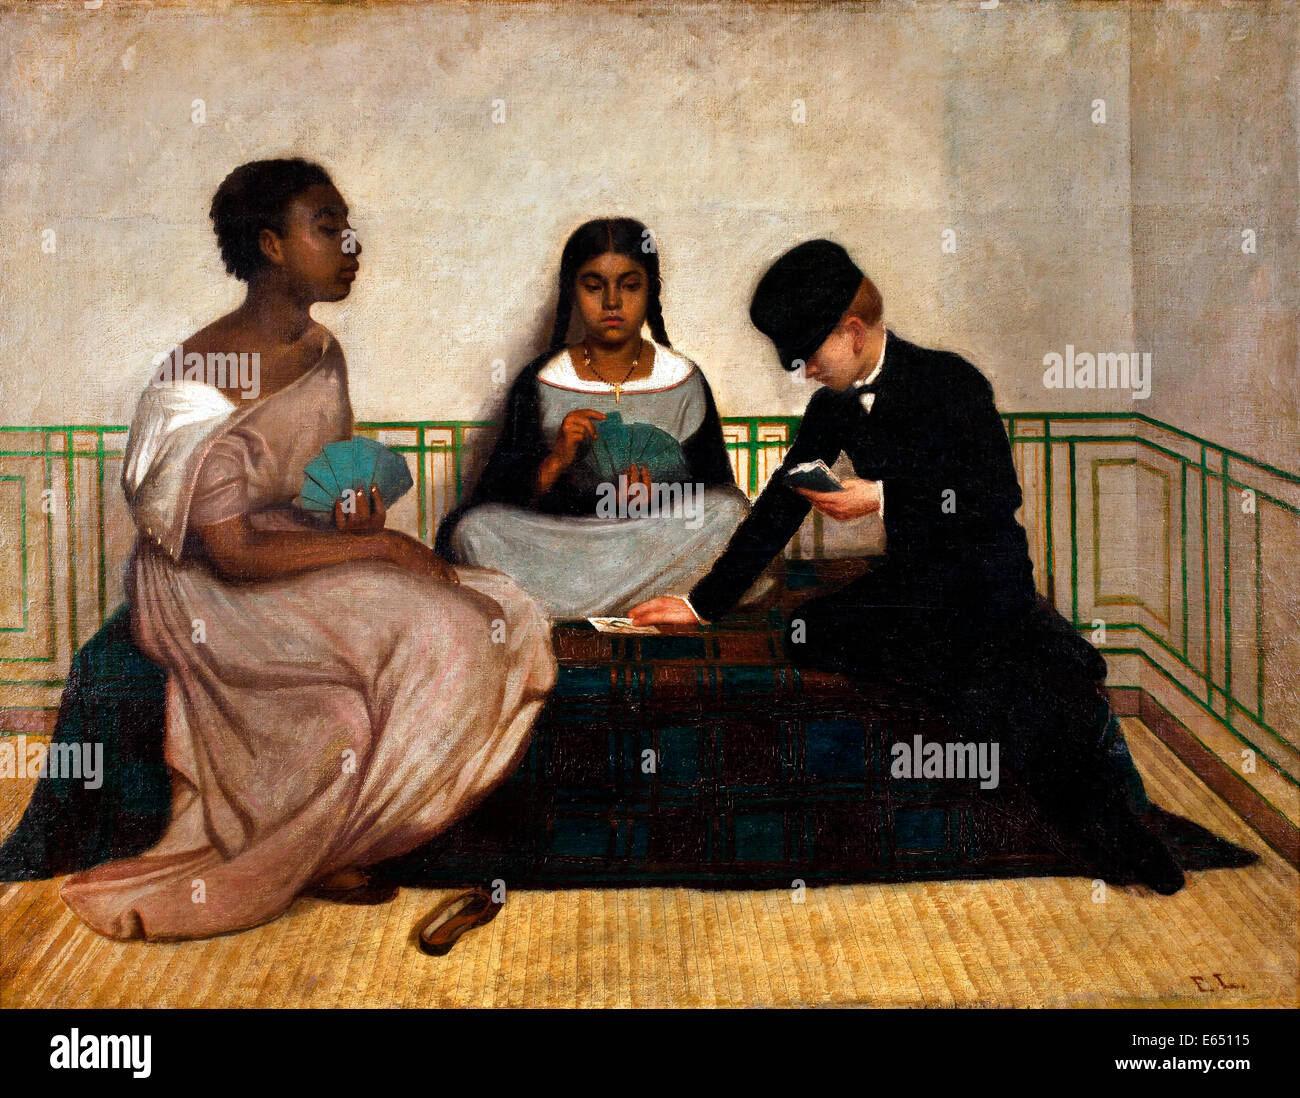 Francisco Laso, las tres razas o la igualdad ante la ley. Circa 1859. Óleo sobre lienzo. Museo de Arte de Lima, Lima, Perú. Foto de stock